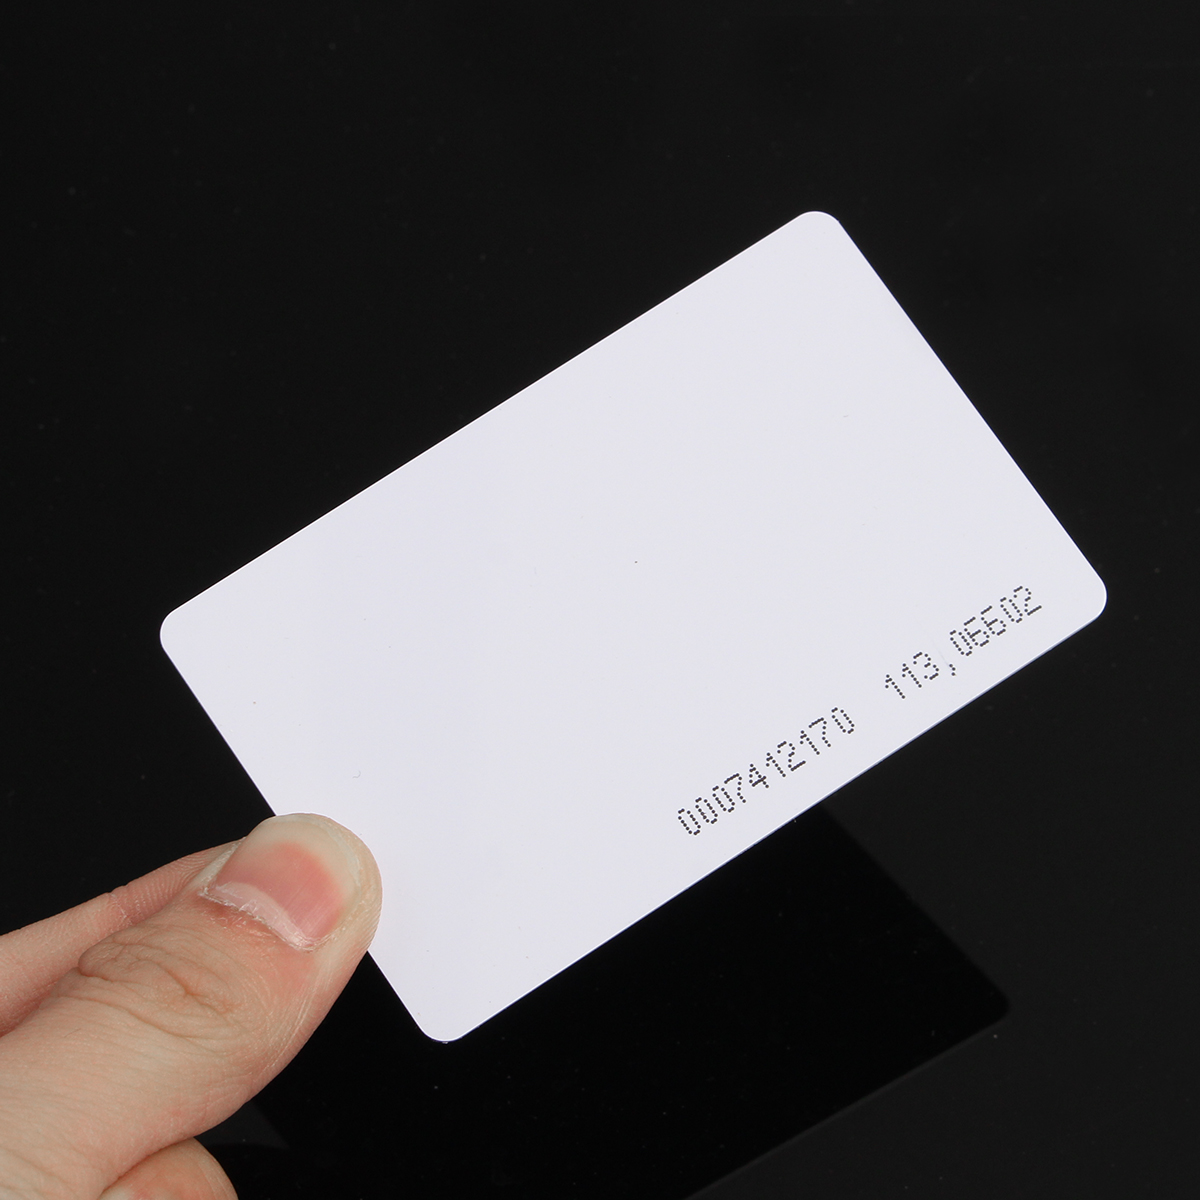 Старая карта доступа. Проксимити карта Card em Mifare. RFID Reader 125khz. Проксимити карточка Card em прямоугольная белая(EMARINE):. Карточка для турникета.